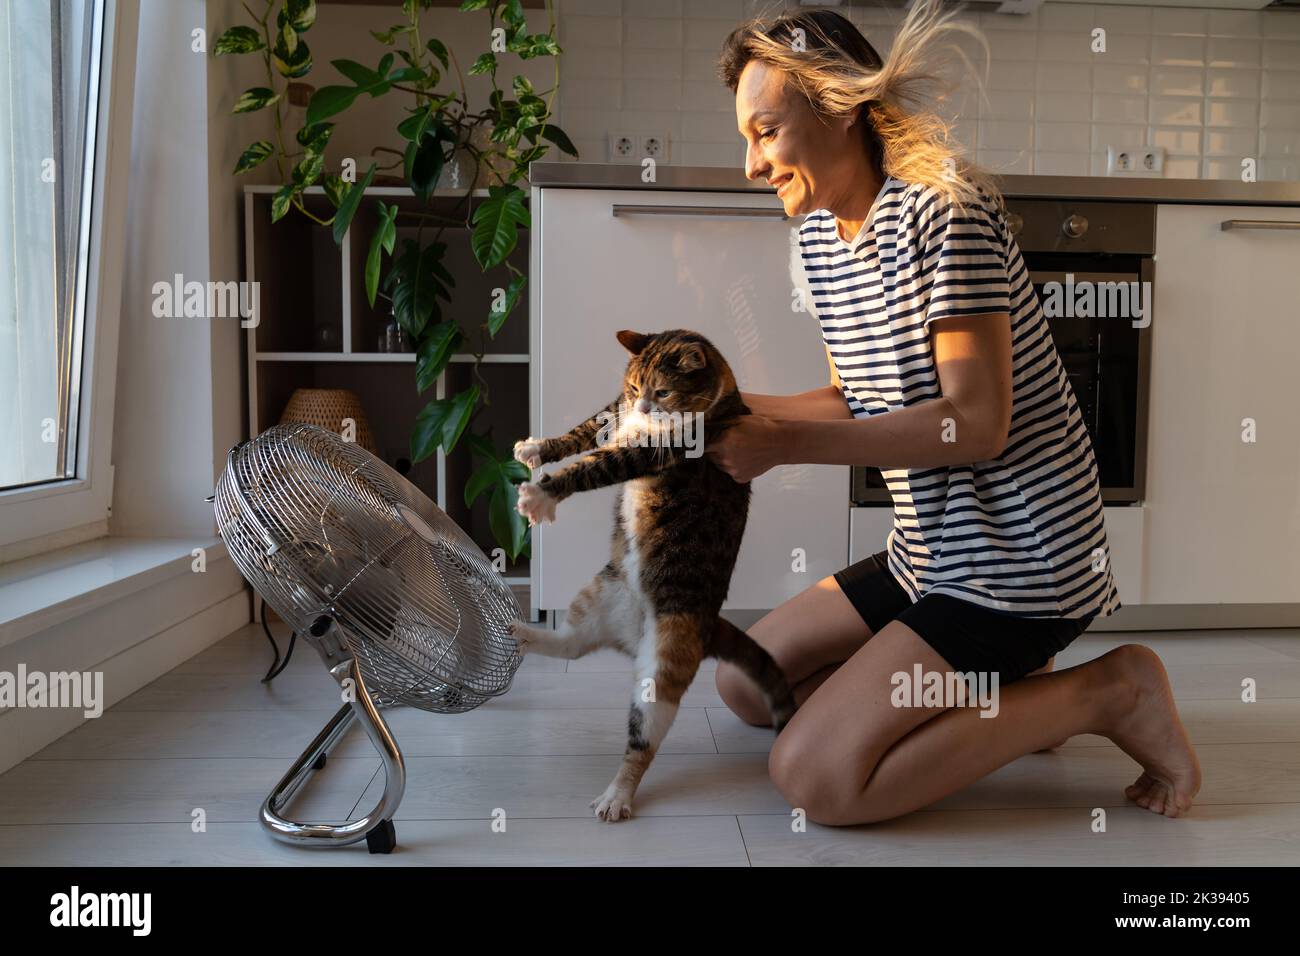 El gato odia la corriente del aire frío y trata de huir del ventilador y del landlady que se sientan en el piso en la cocina Foto de stock